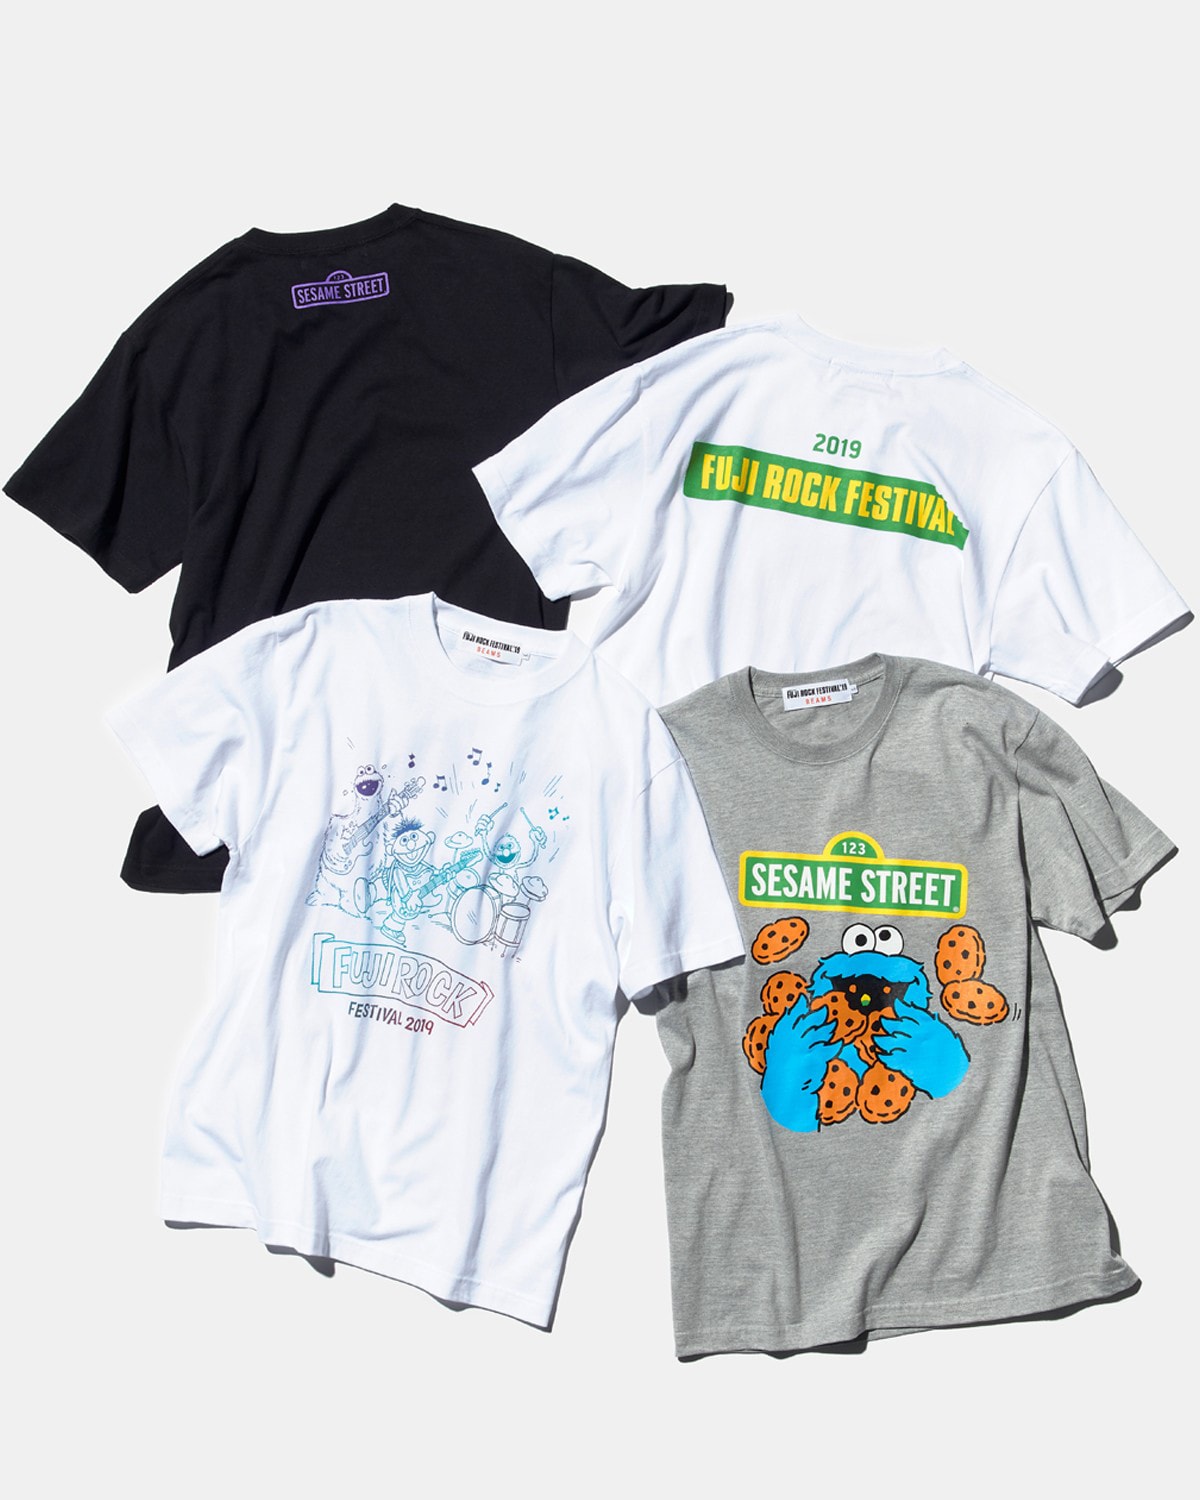 BEAMS x Fuji Rock 2019 聯乘限定 T-Shirt 系列登場